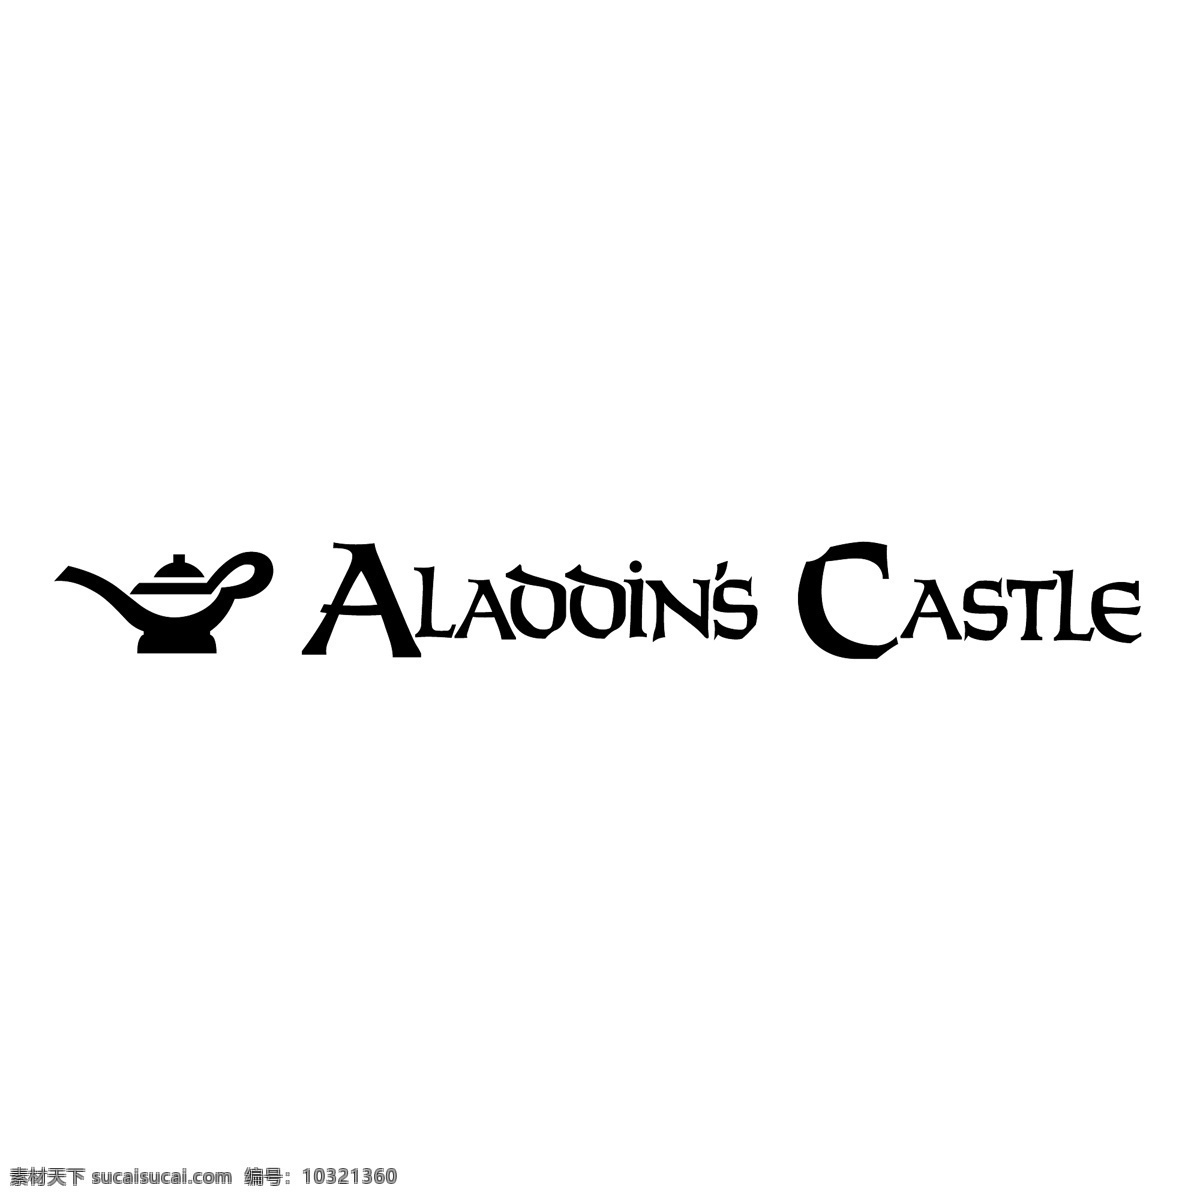 阿拉丁的城堡 矢量标志下载 免费矢量标识 商标 品牌标识 标识 矢量 免费 品牌 公司 白色